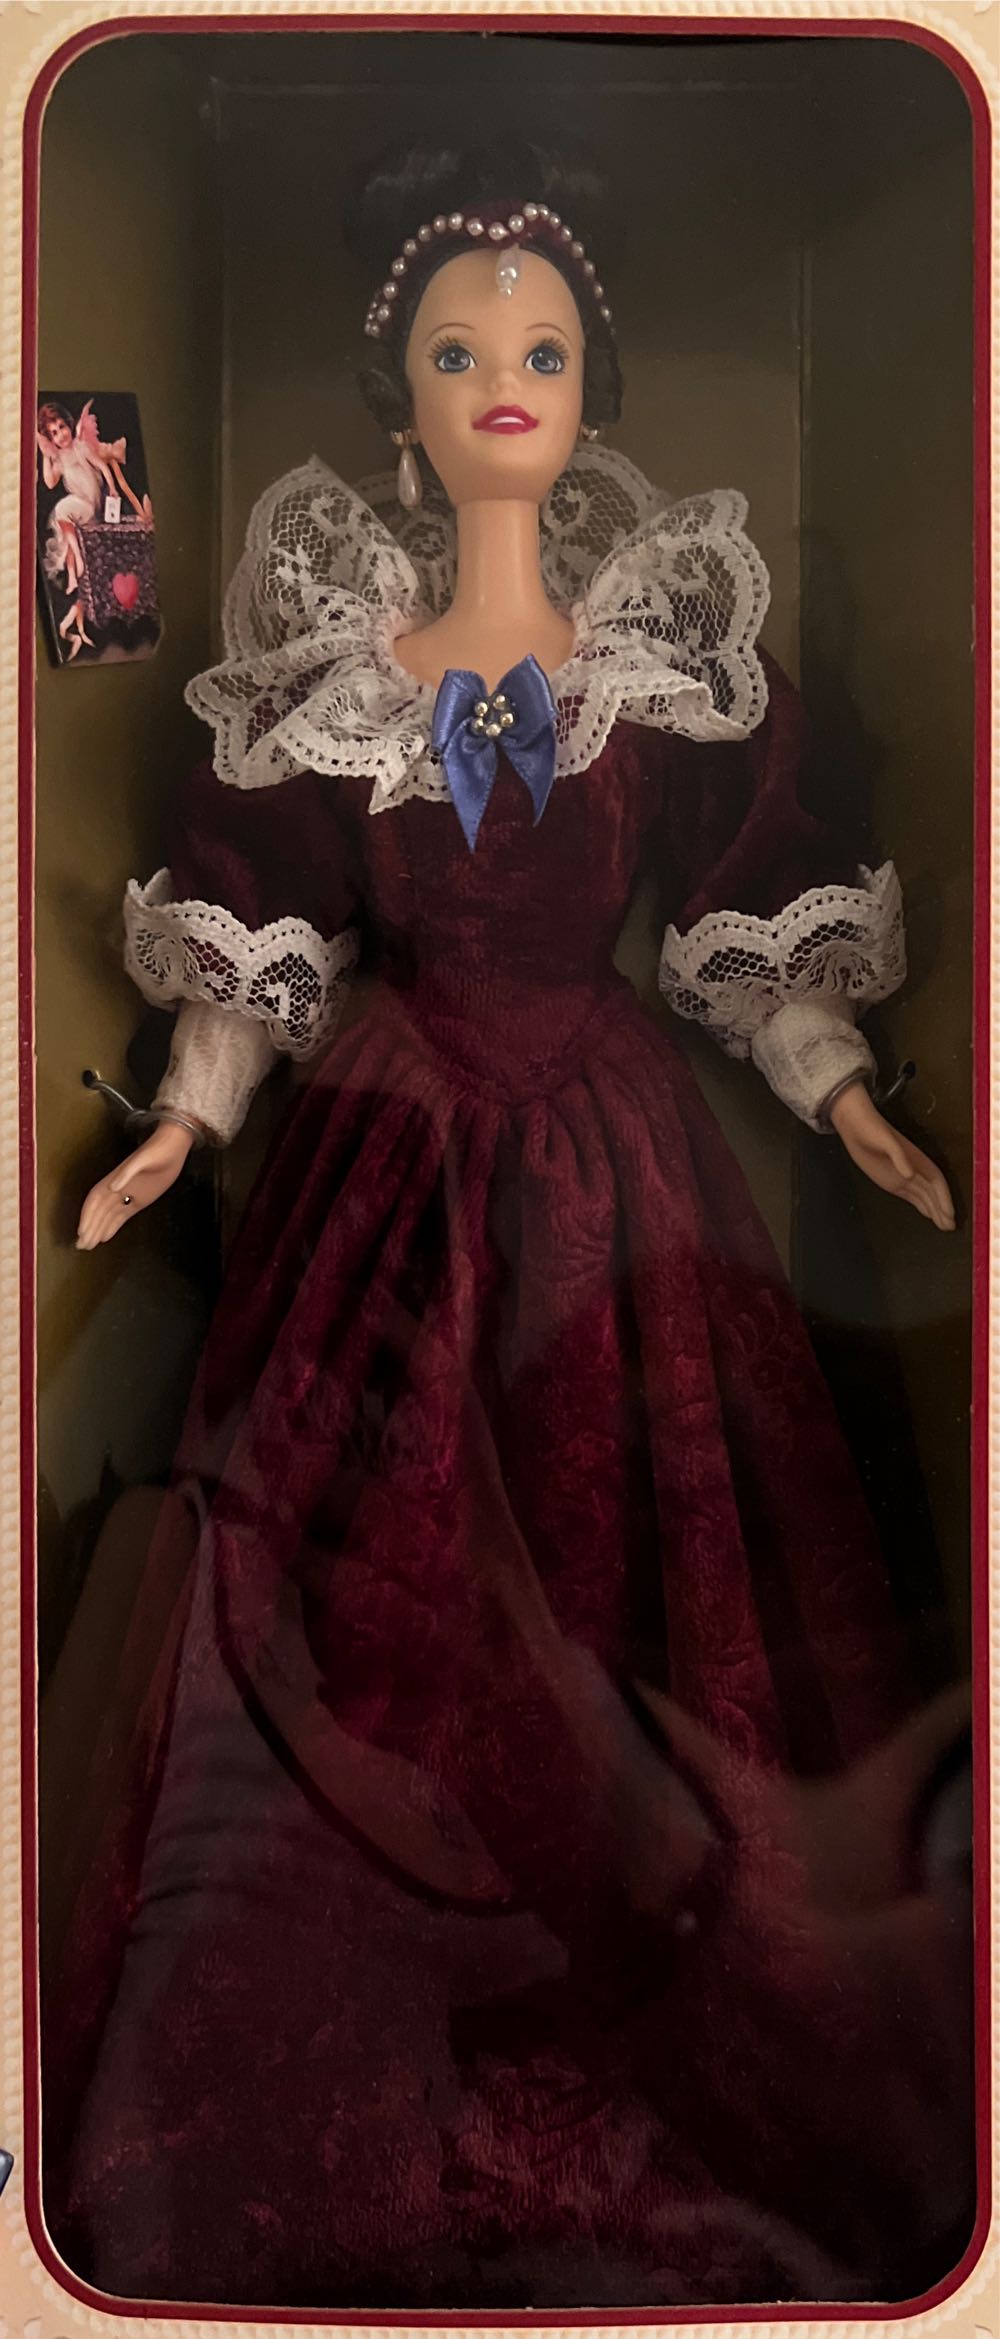 Sentimental Valentine Barbie - Hallmark doll collectible [Barcode 015012412000] - Main Image 3